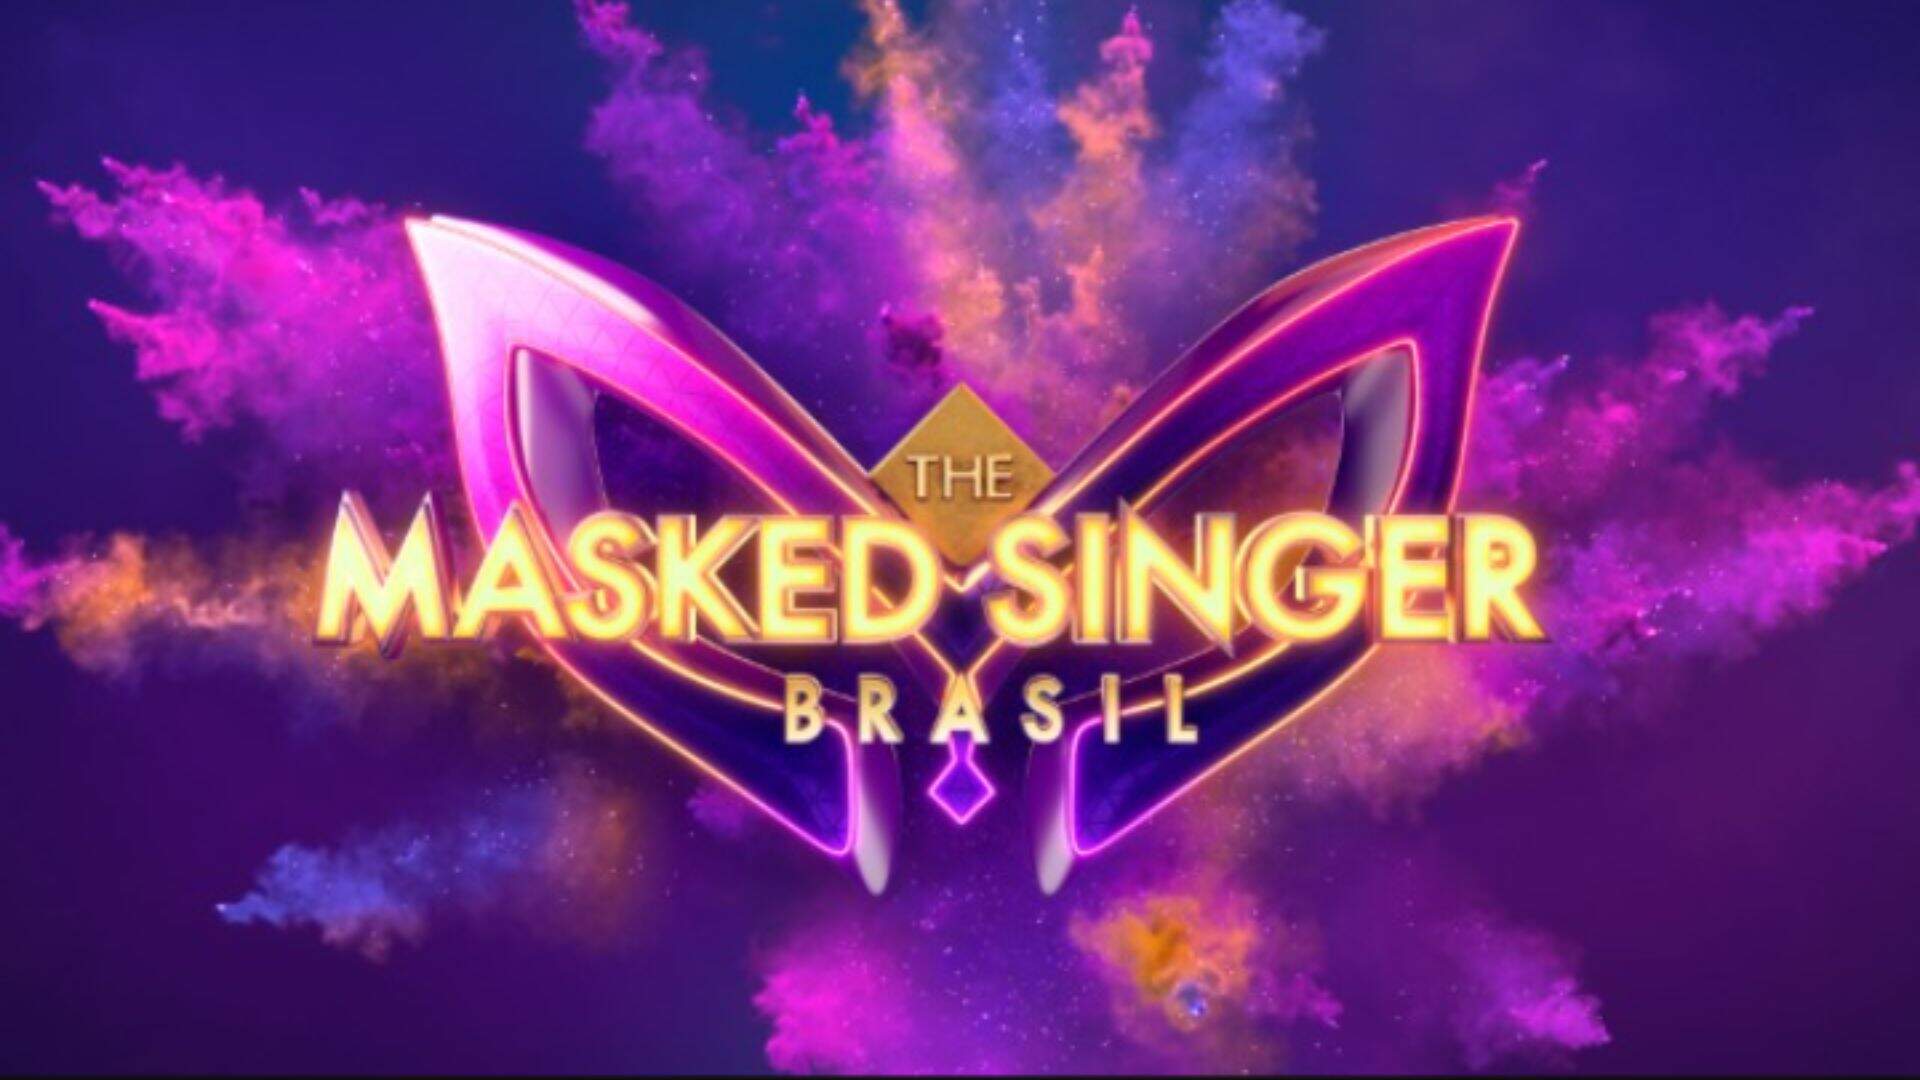 Cancelado? The Masked Singer sofre sérias mudanças e novos jurados são confirmados